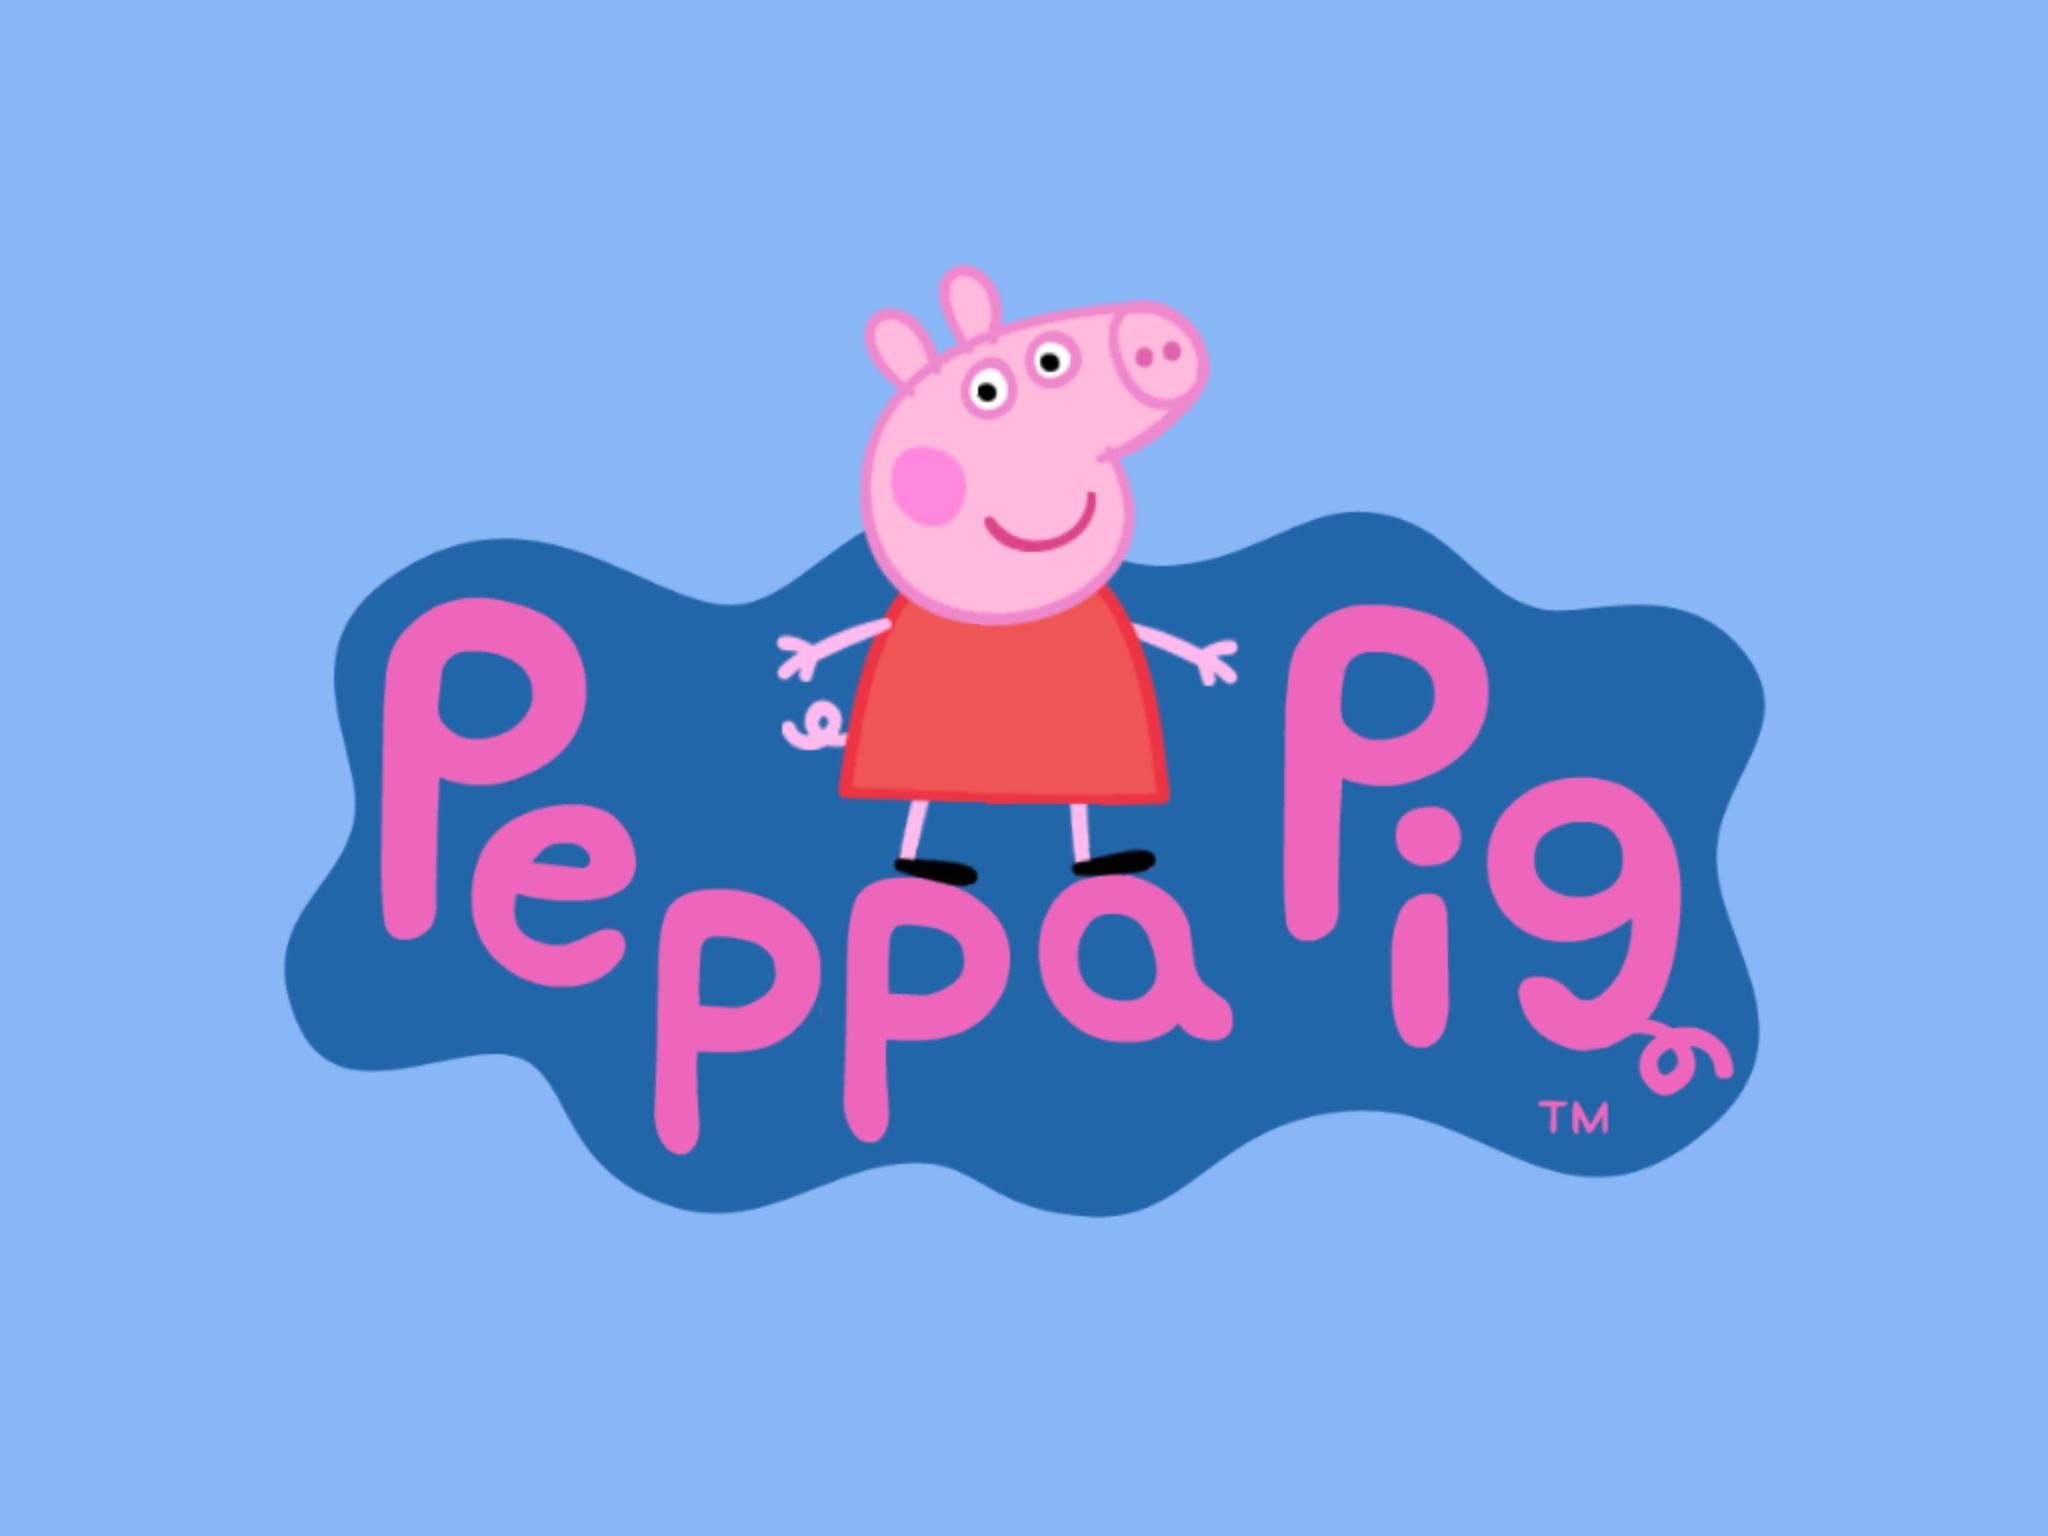 Peppa Pig Having Fun Wallpaper